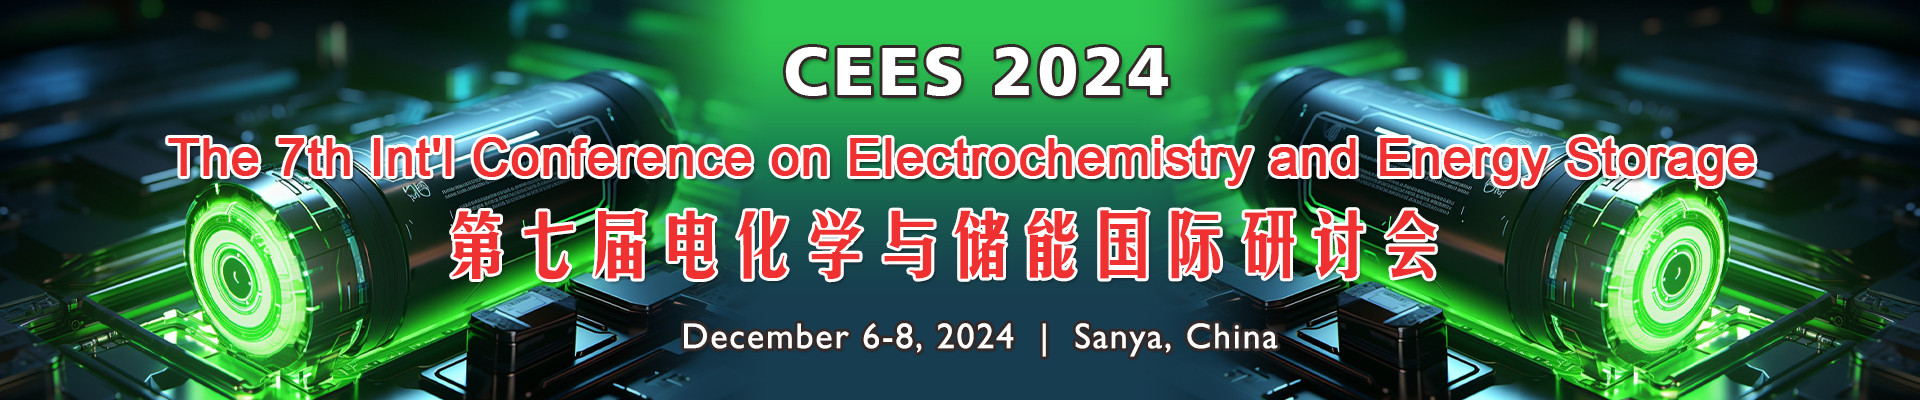 第七届电化学与储能国际研讨会(CEES 2024)